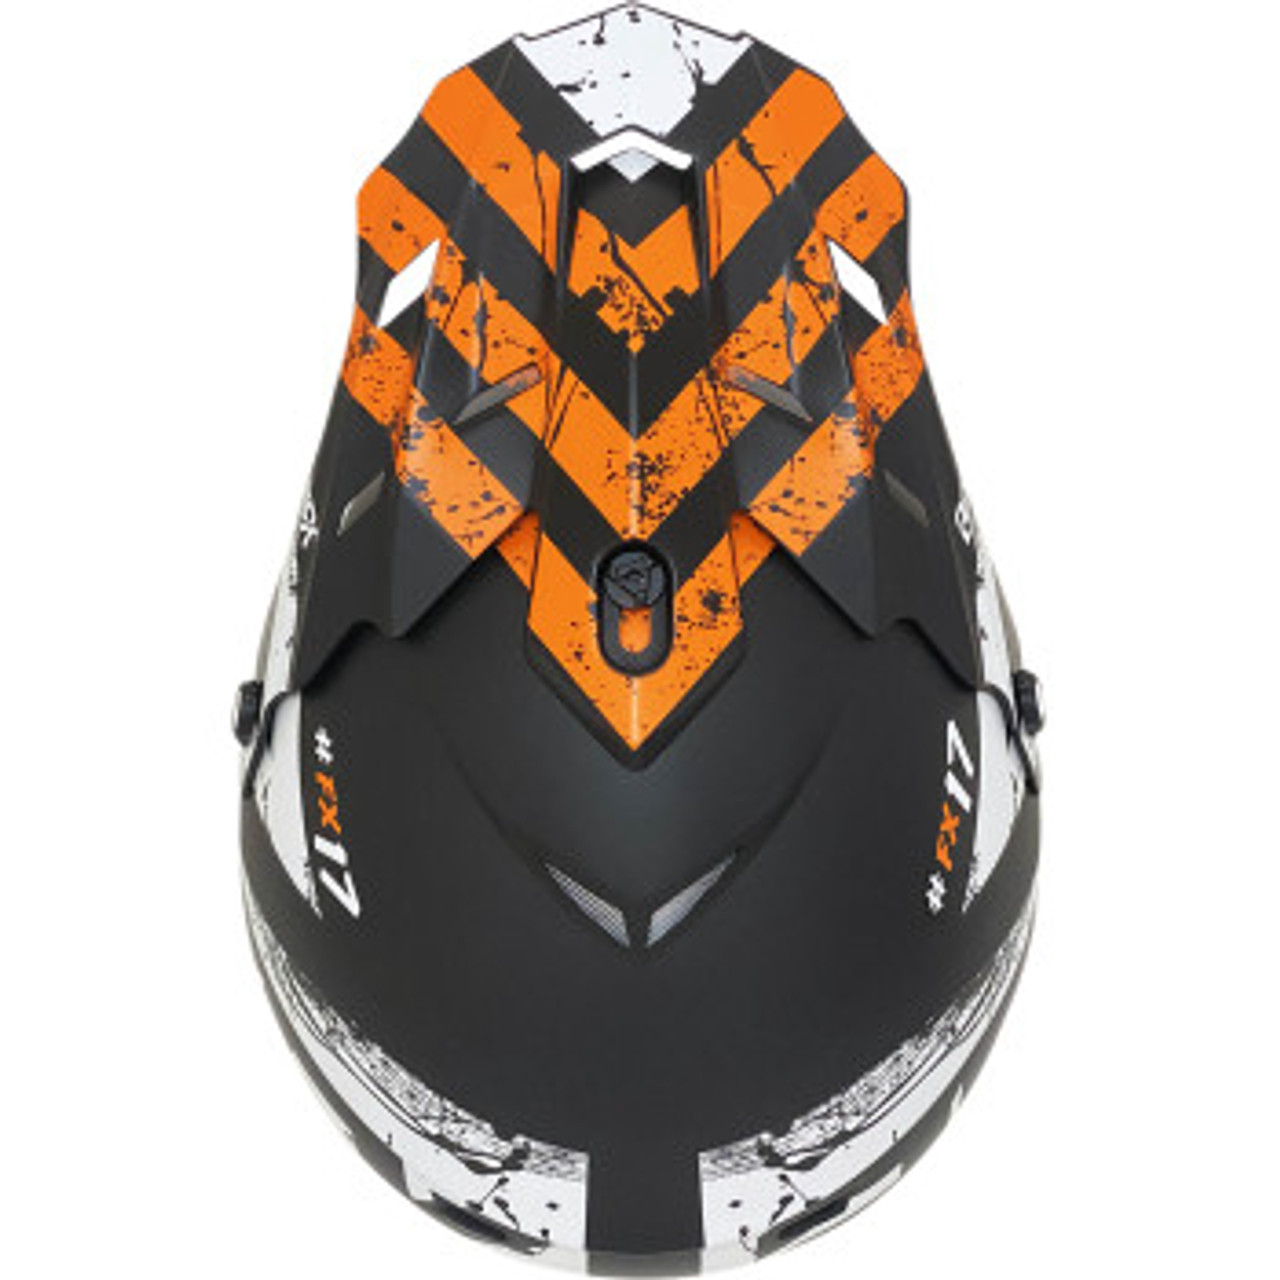 AFX FX-17 Youth Helmet - Attack - Matte Black/Orange